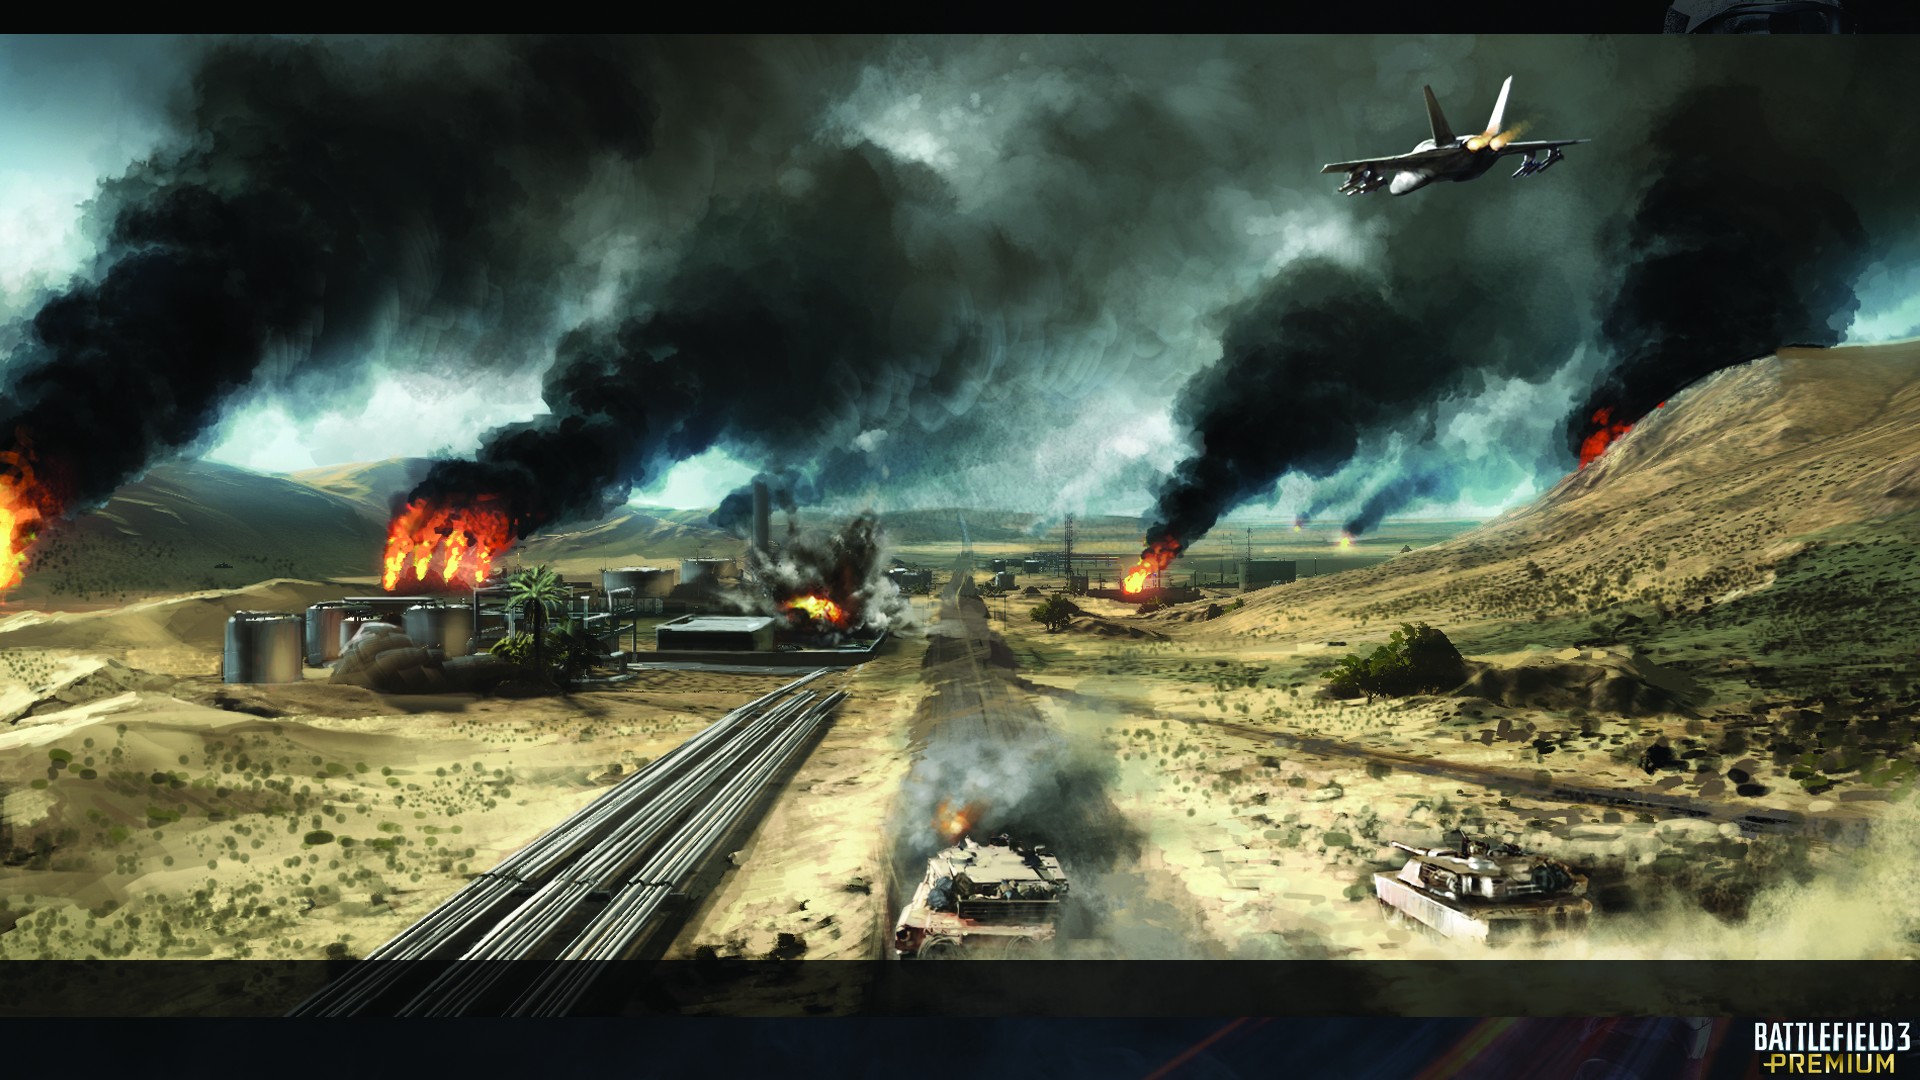 General 1920x1080 Battlefield 3 war video games video game art